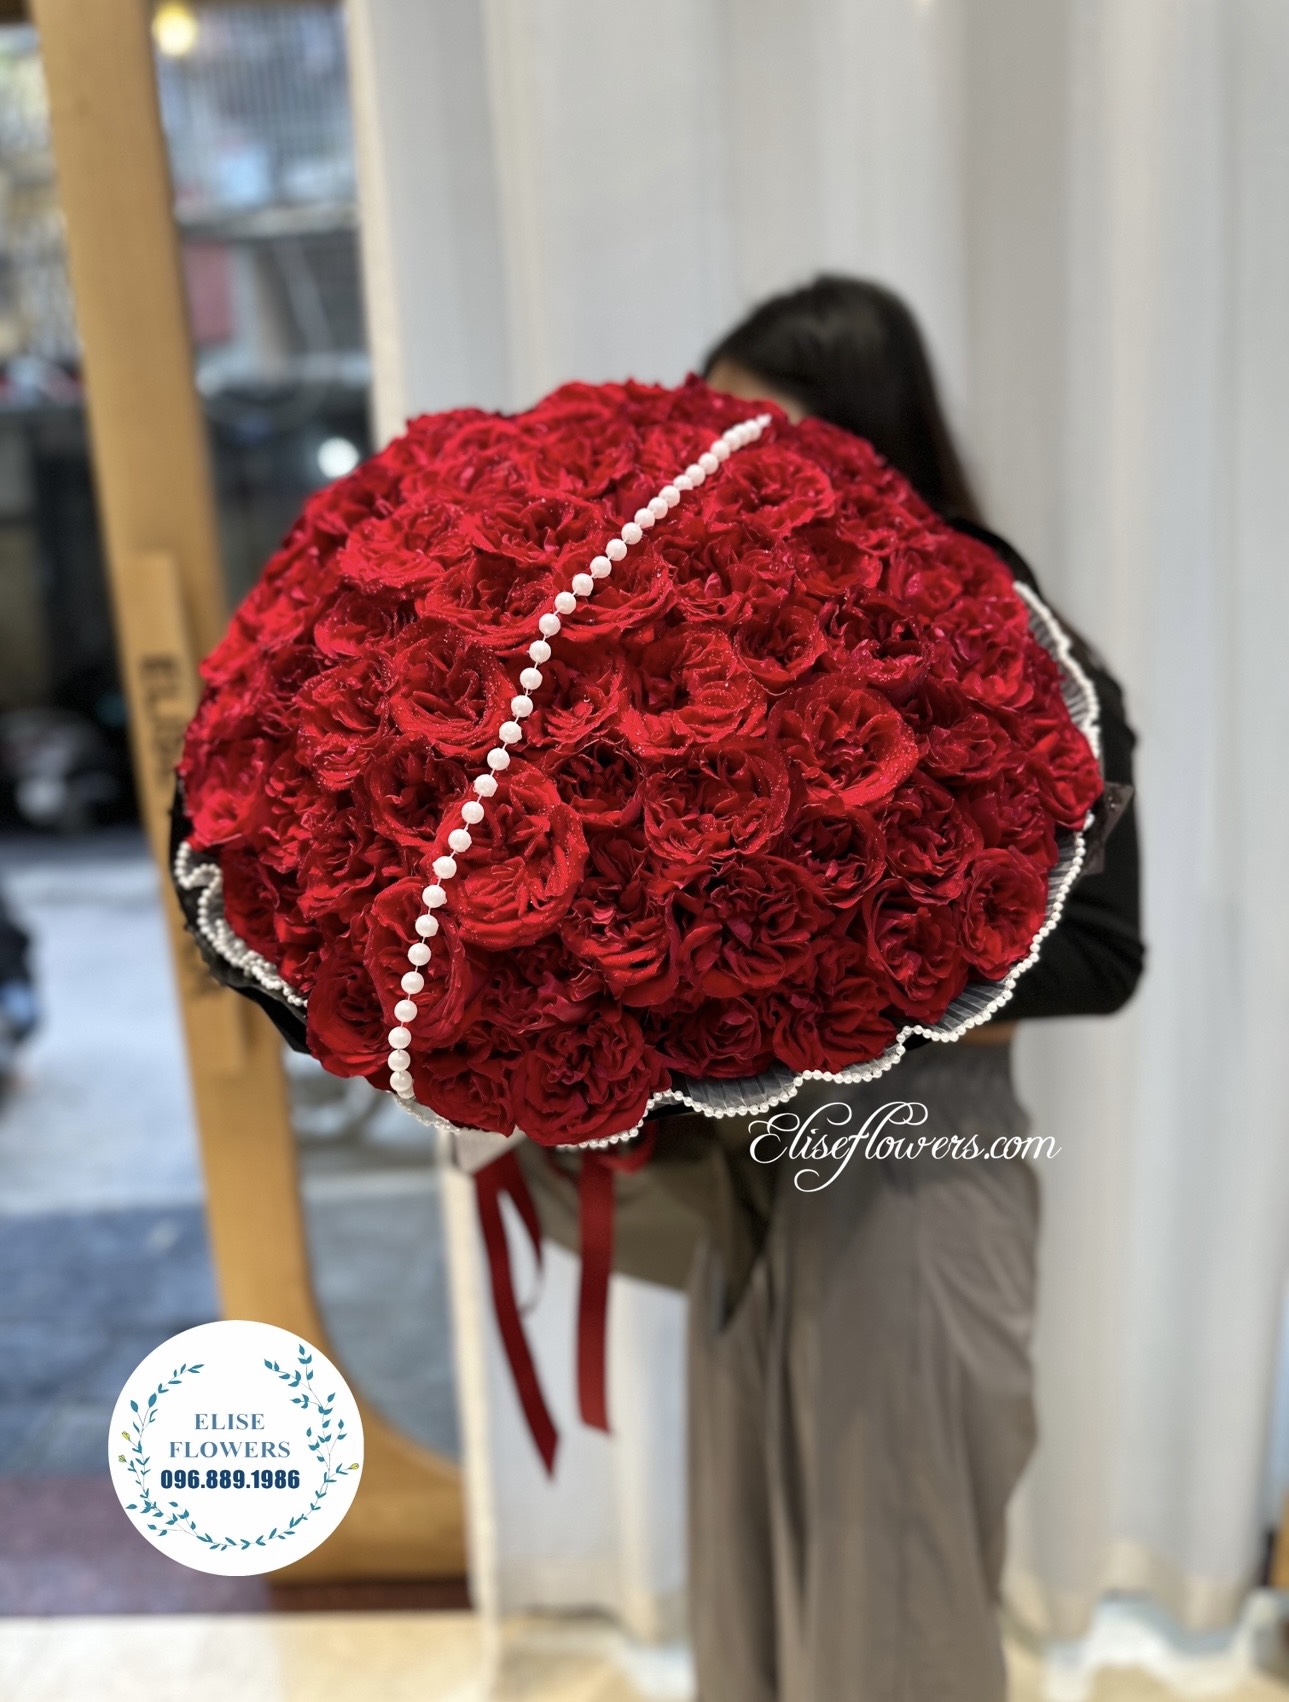 BÓ HOA HỒNG ĐỎ 100 BÔNG . Bó hoa hồng đỏ nhập khẩu 100 bông ở Hà Nội. Bó hoa hồng đỏ đẹp ở Hà Nội.